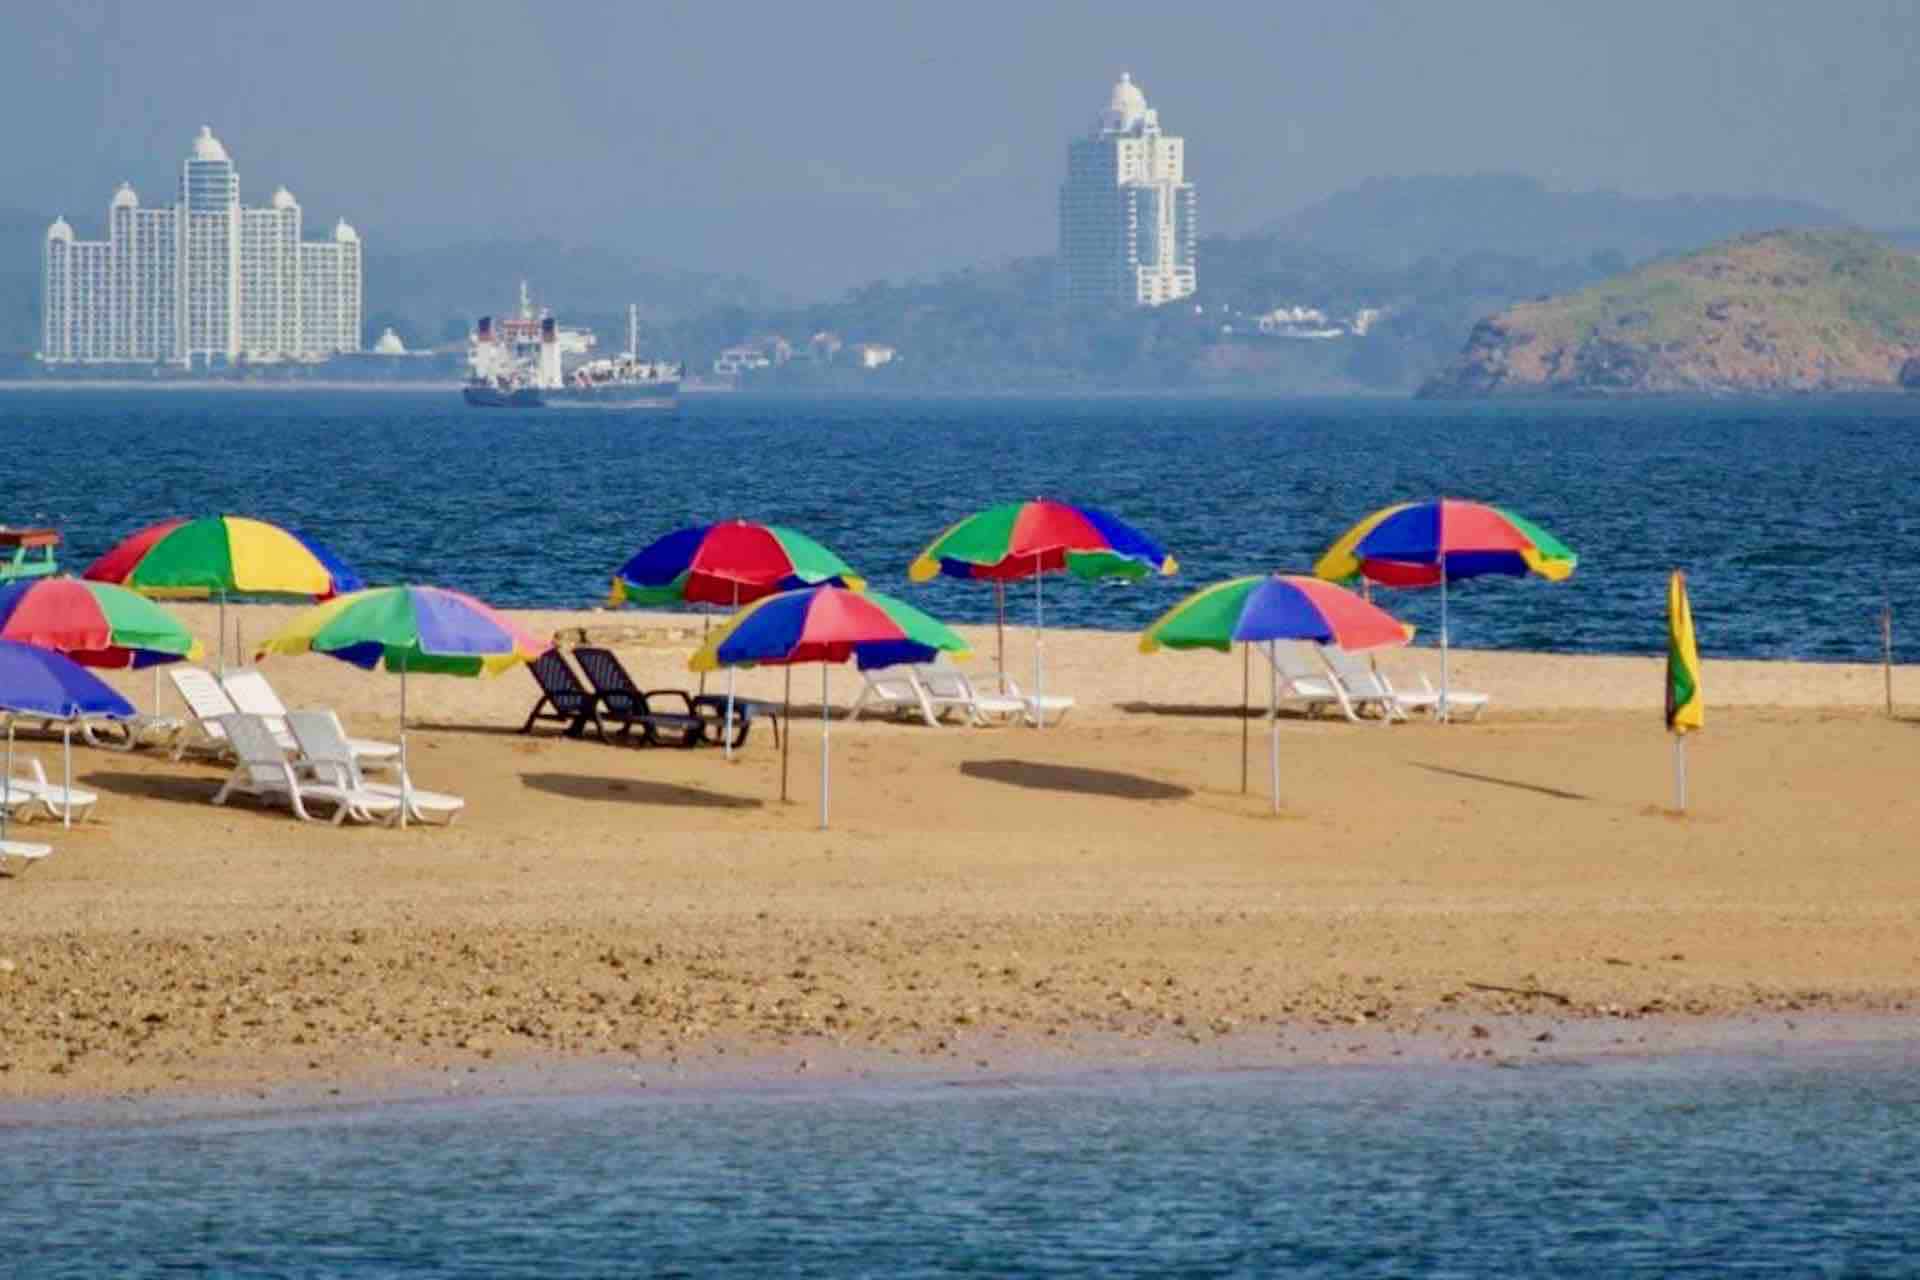 Taboga island Panama private sailboat tour beach with umbrellas